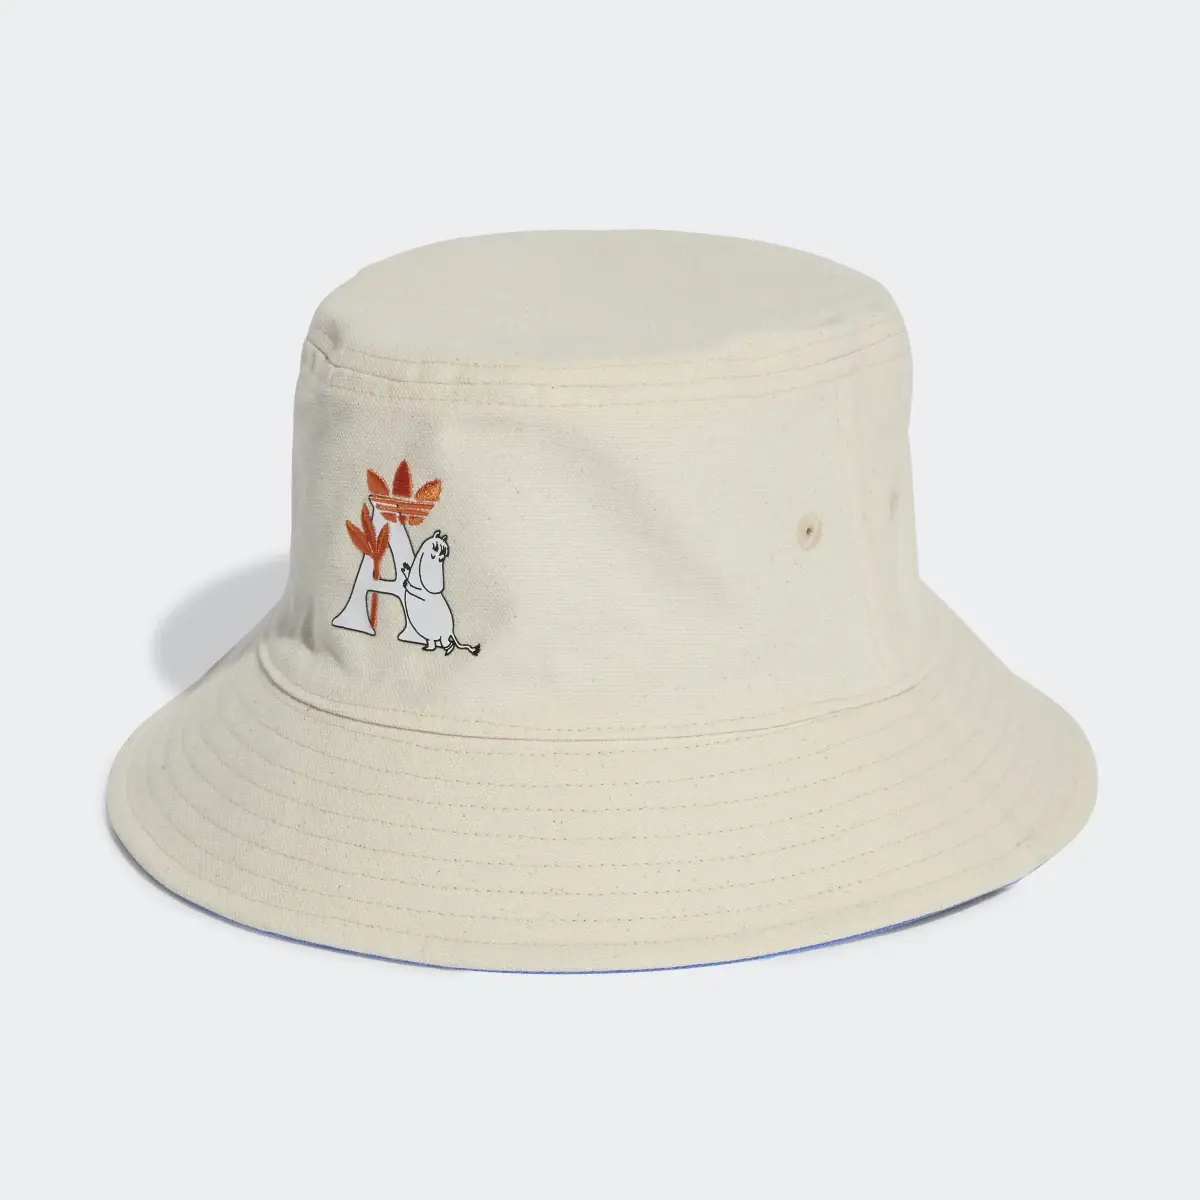 Adidas Originals x Moomin Reversible Bucket Hat. 1